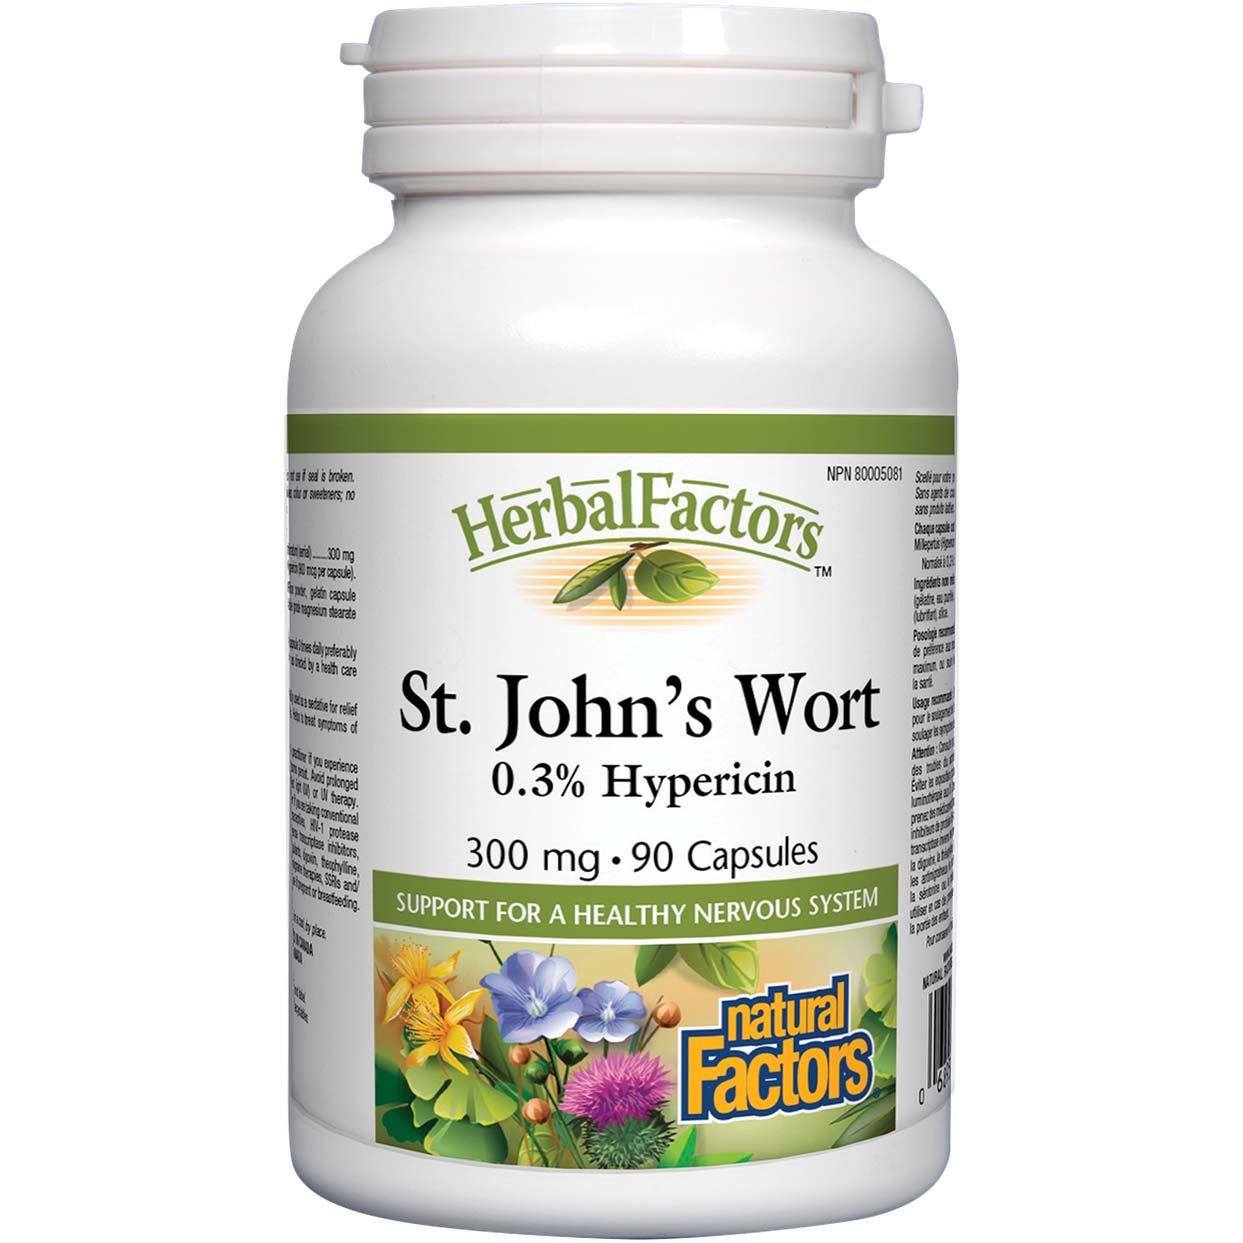 Natural Factors St. John's Wort, 300 mg, 90 Capsules